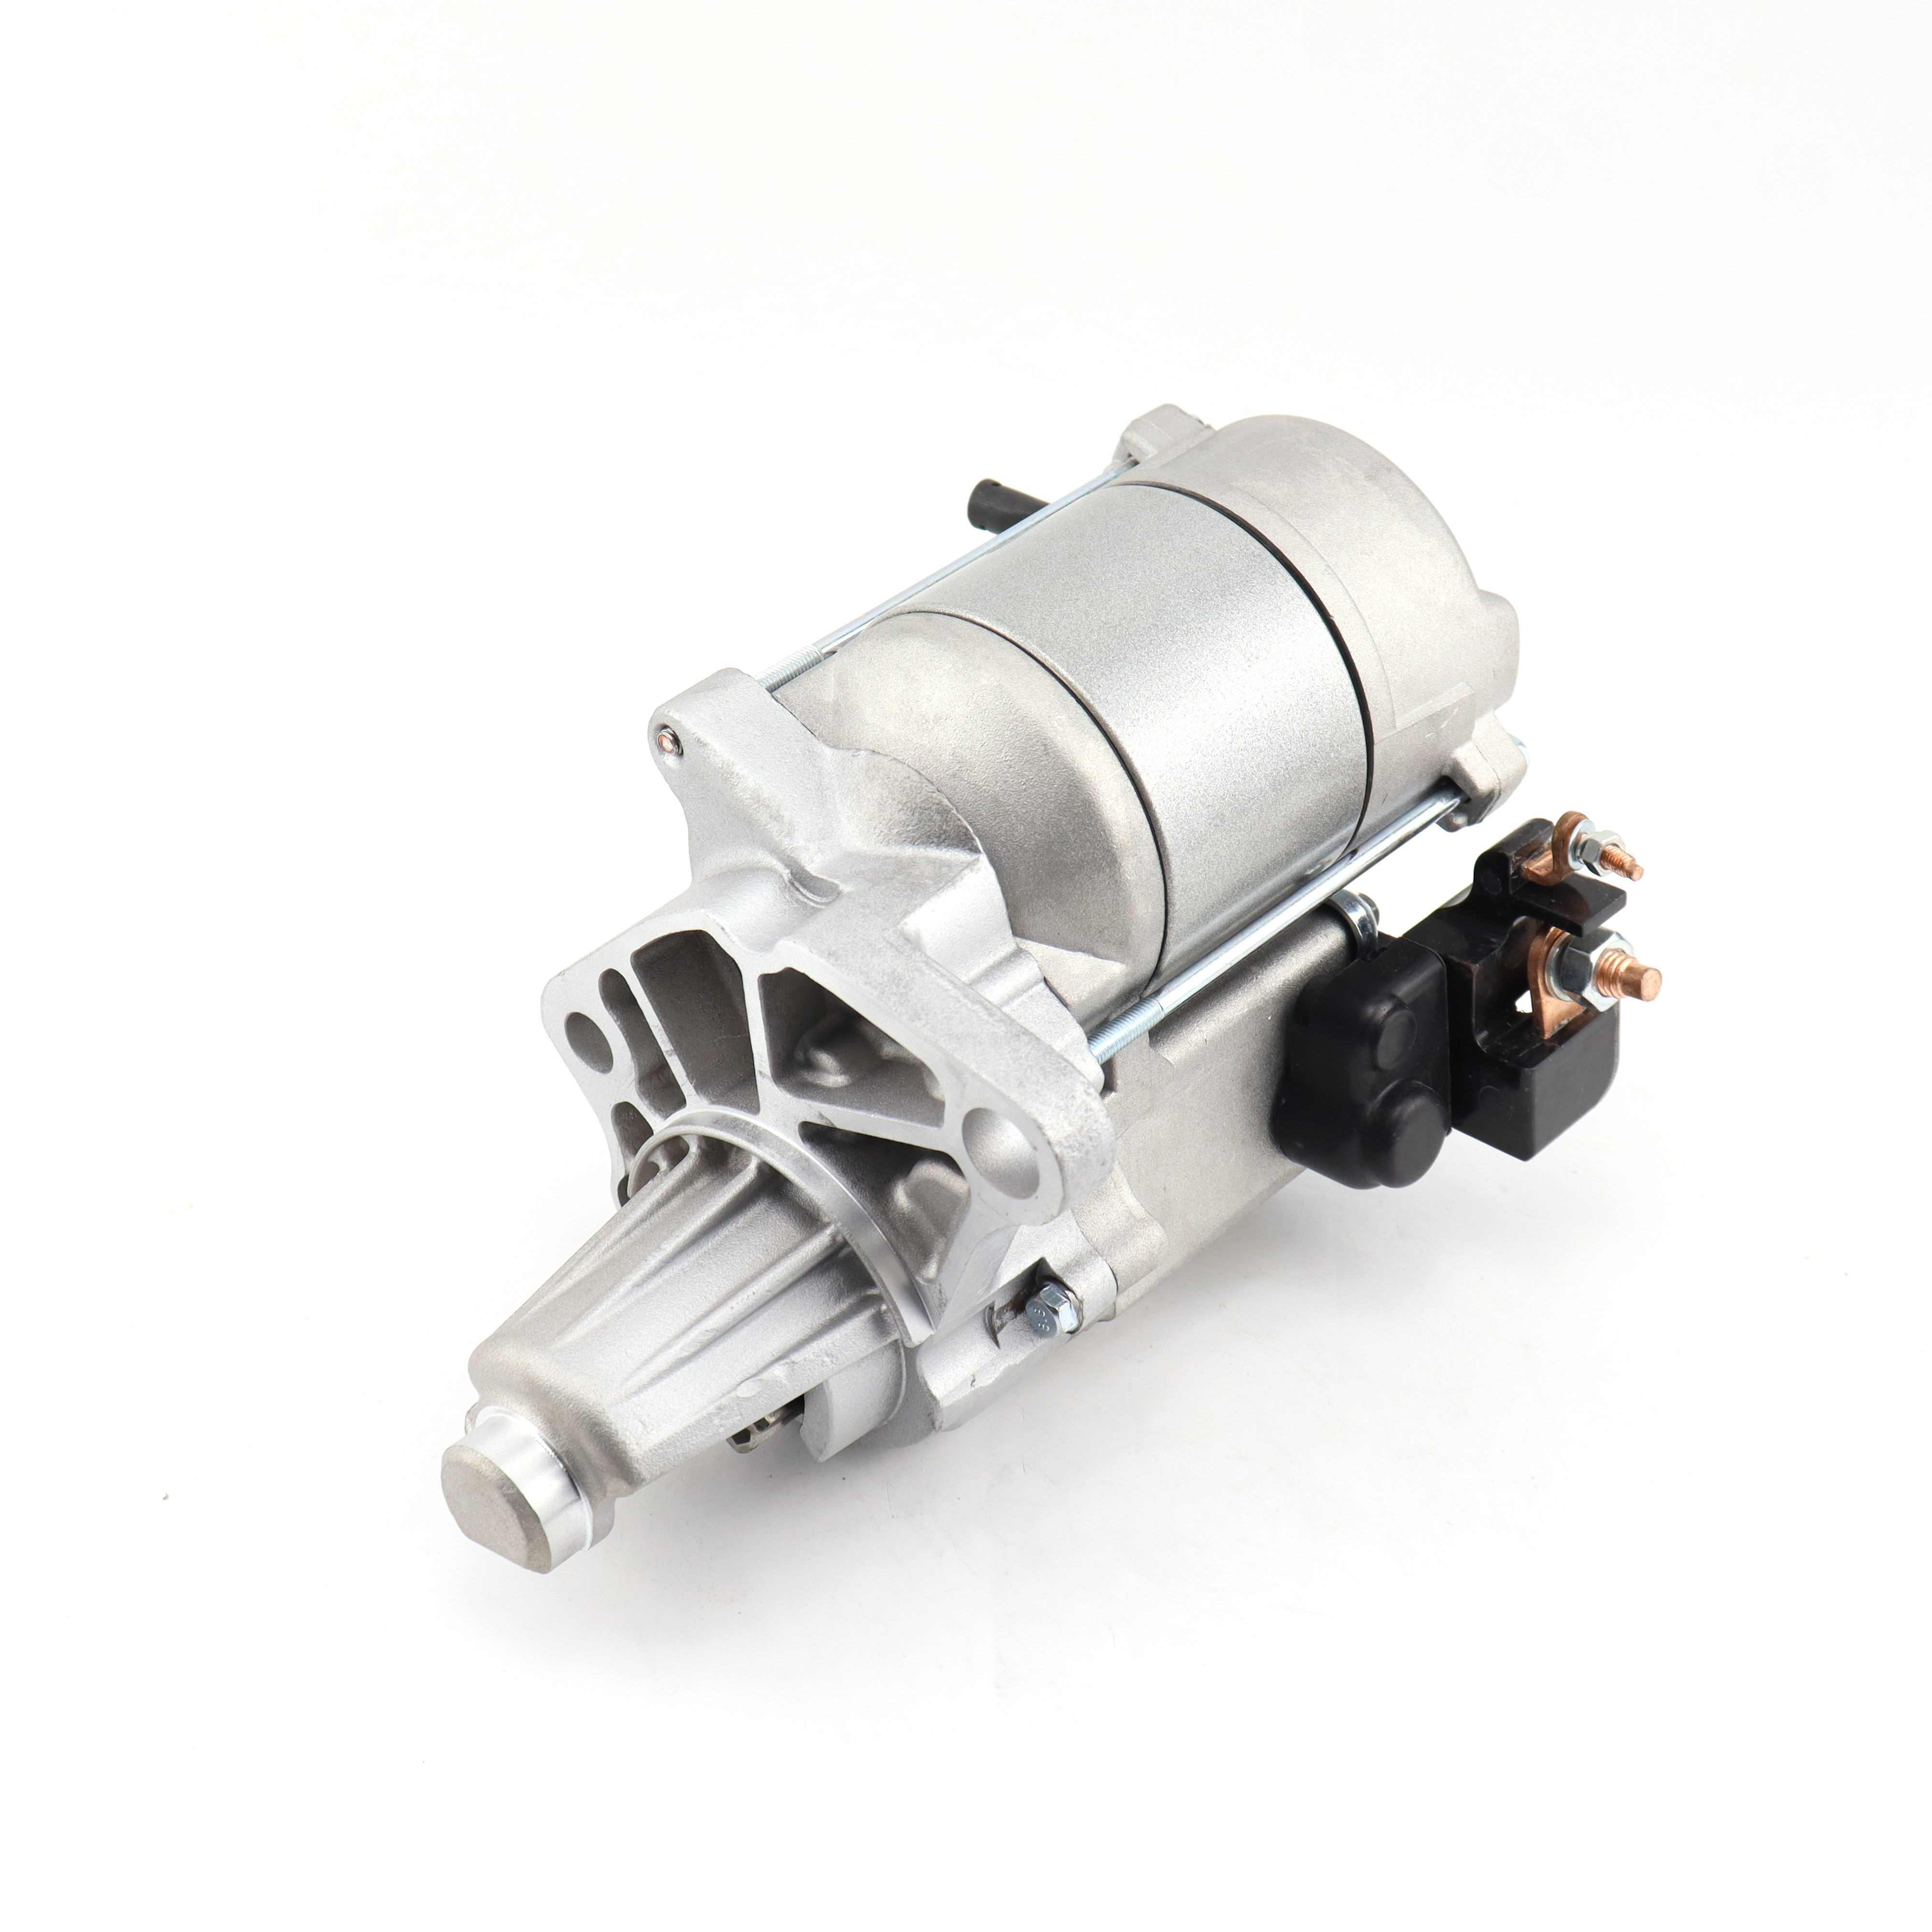 Starter Motor for Denso Lester 17084 OEM 128000-4960 12V 10t 1.4kw 